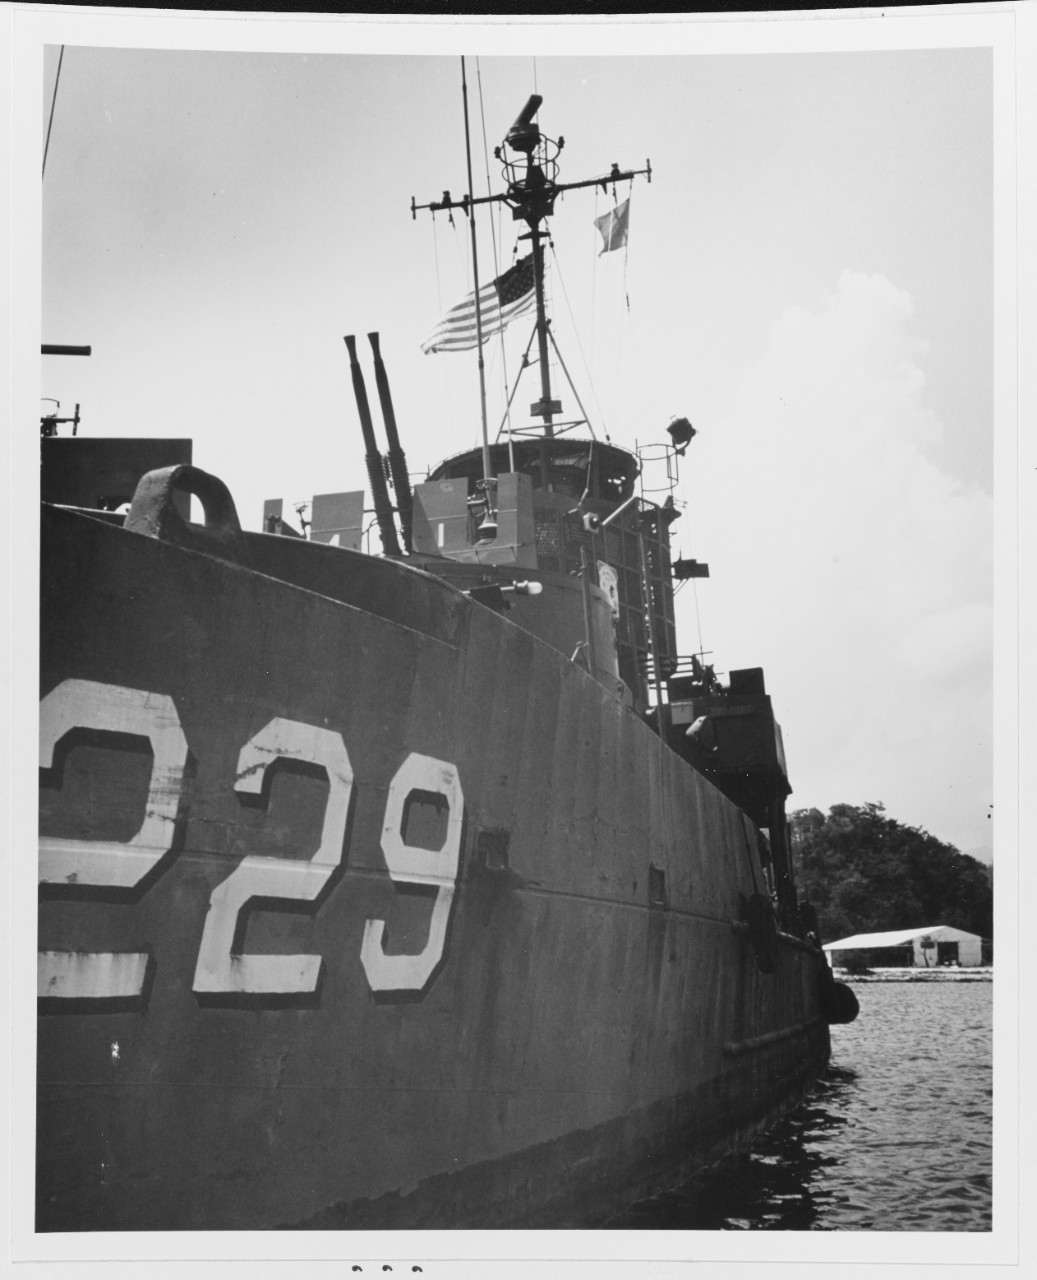 LUU PHU THO (HQ-229), South Vietnamese Landing Ship, ex USS LSSL-101